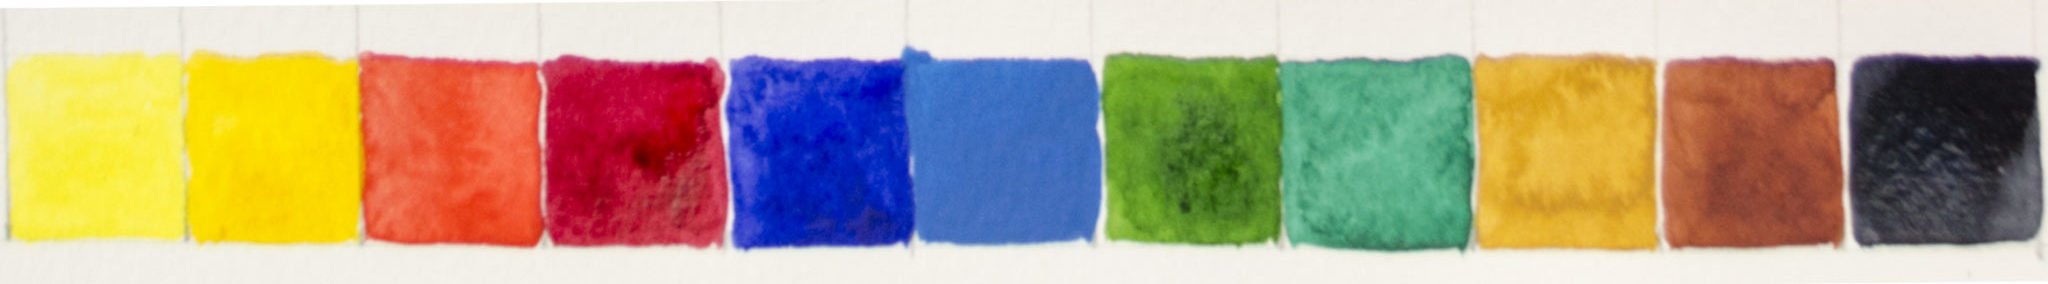 Die 12 Farben der Van Gogh Pocket Box